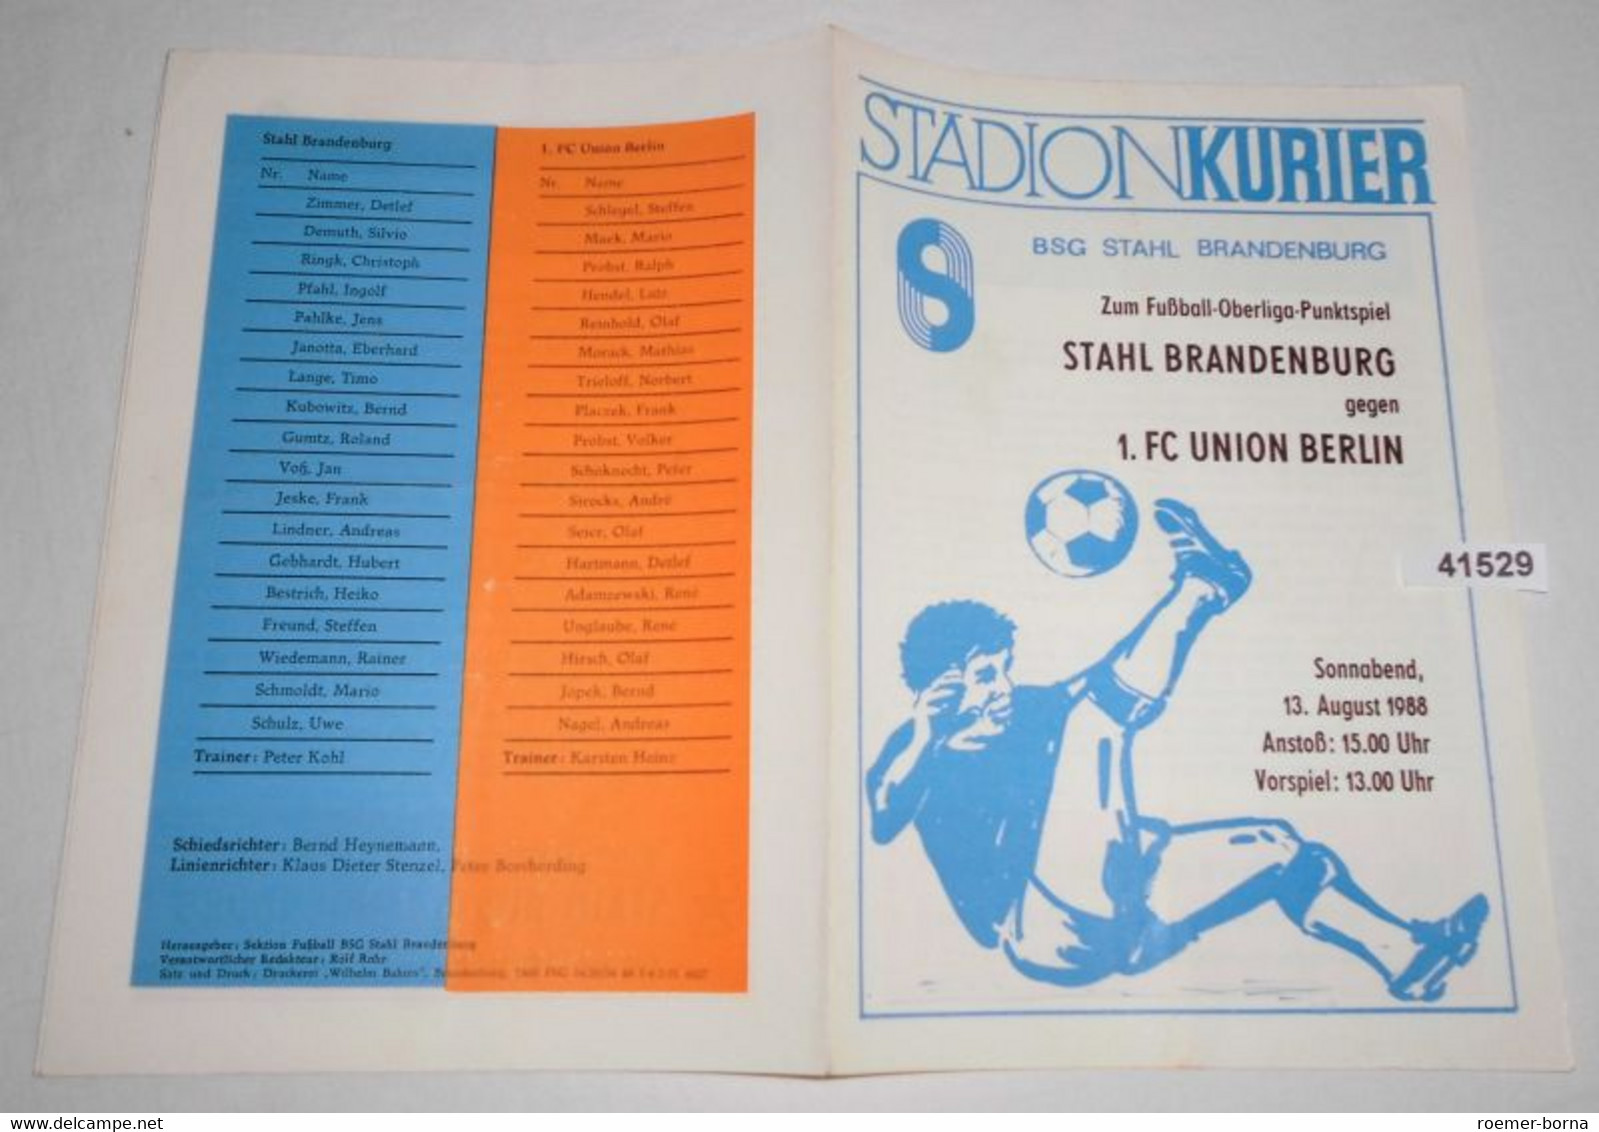 Stadion Kurier Programm Fußball-Oberliga Punktspiel 1988  Stahl Brandenburg - 1. FC Union Berlin - Sport